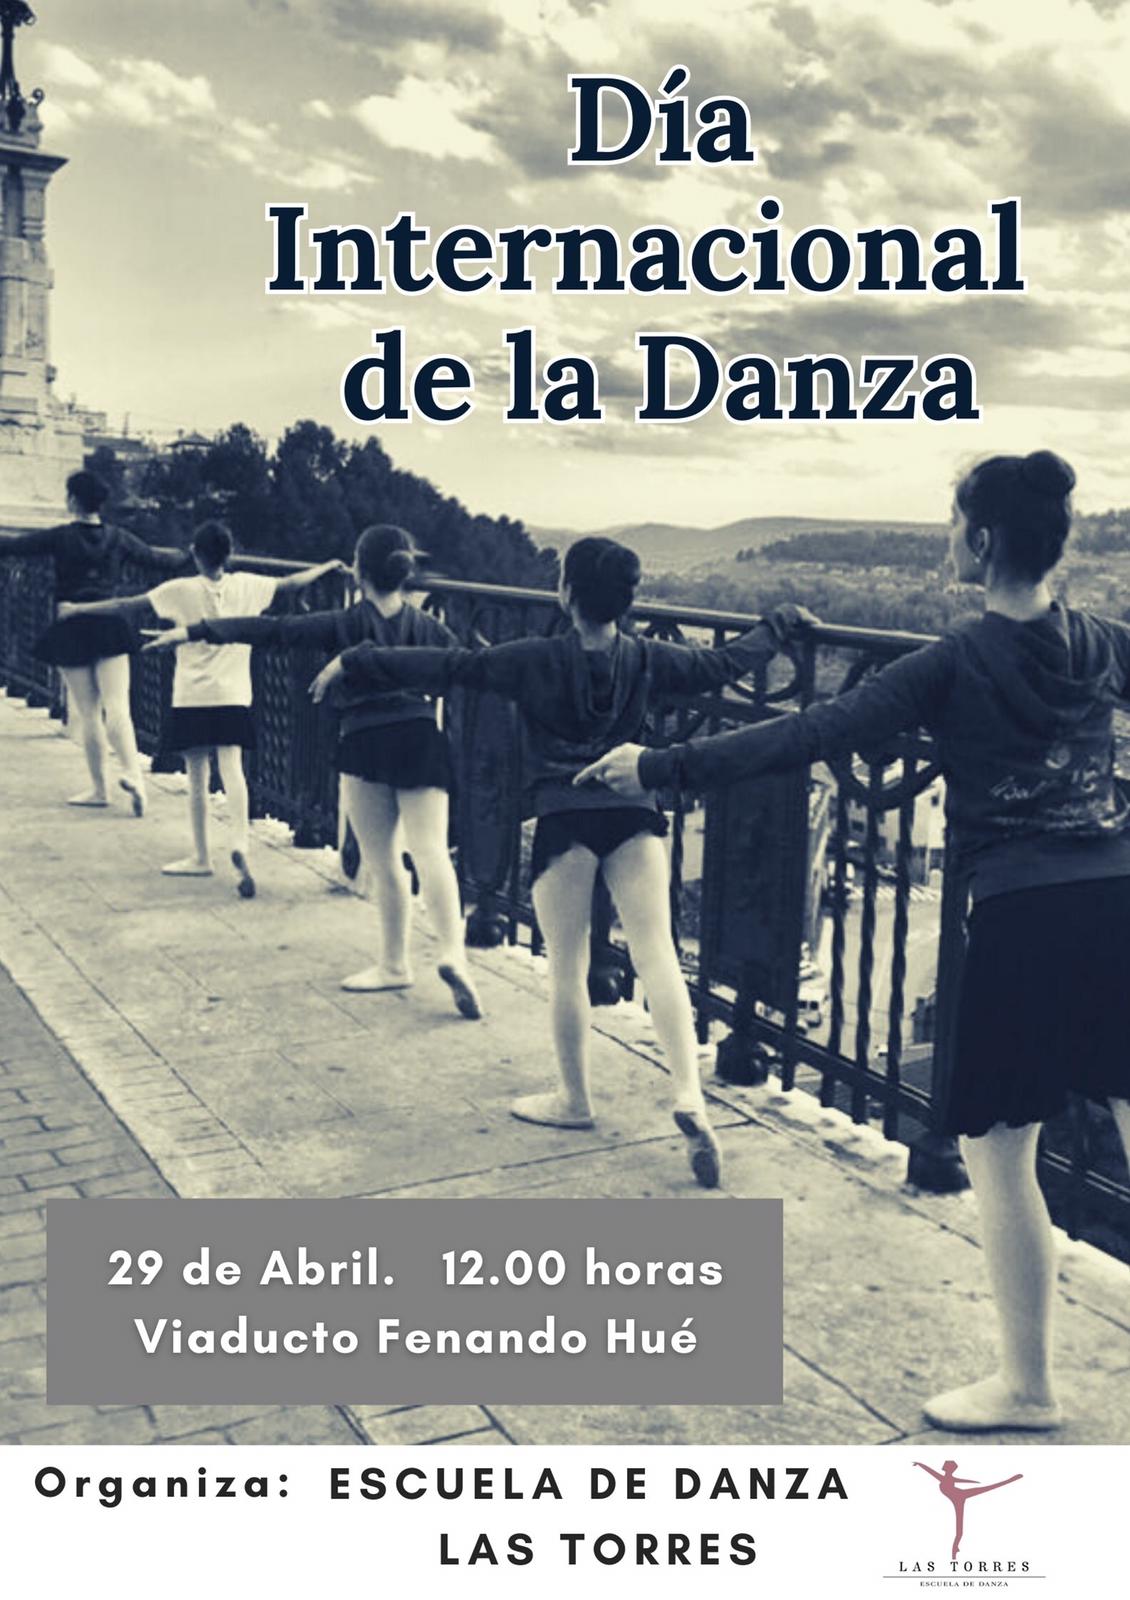 La Escuela de Danza Las Torres saldrÃ¡ a la calle para celebrar el DÃ­a Internacional de la Danza el 29 de abril